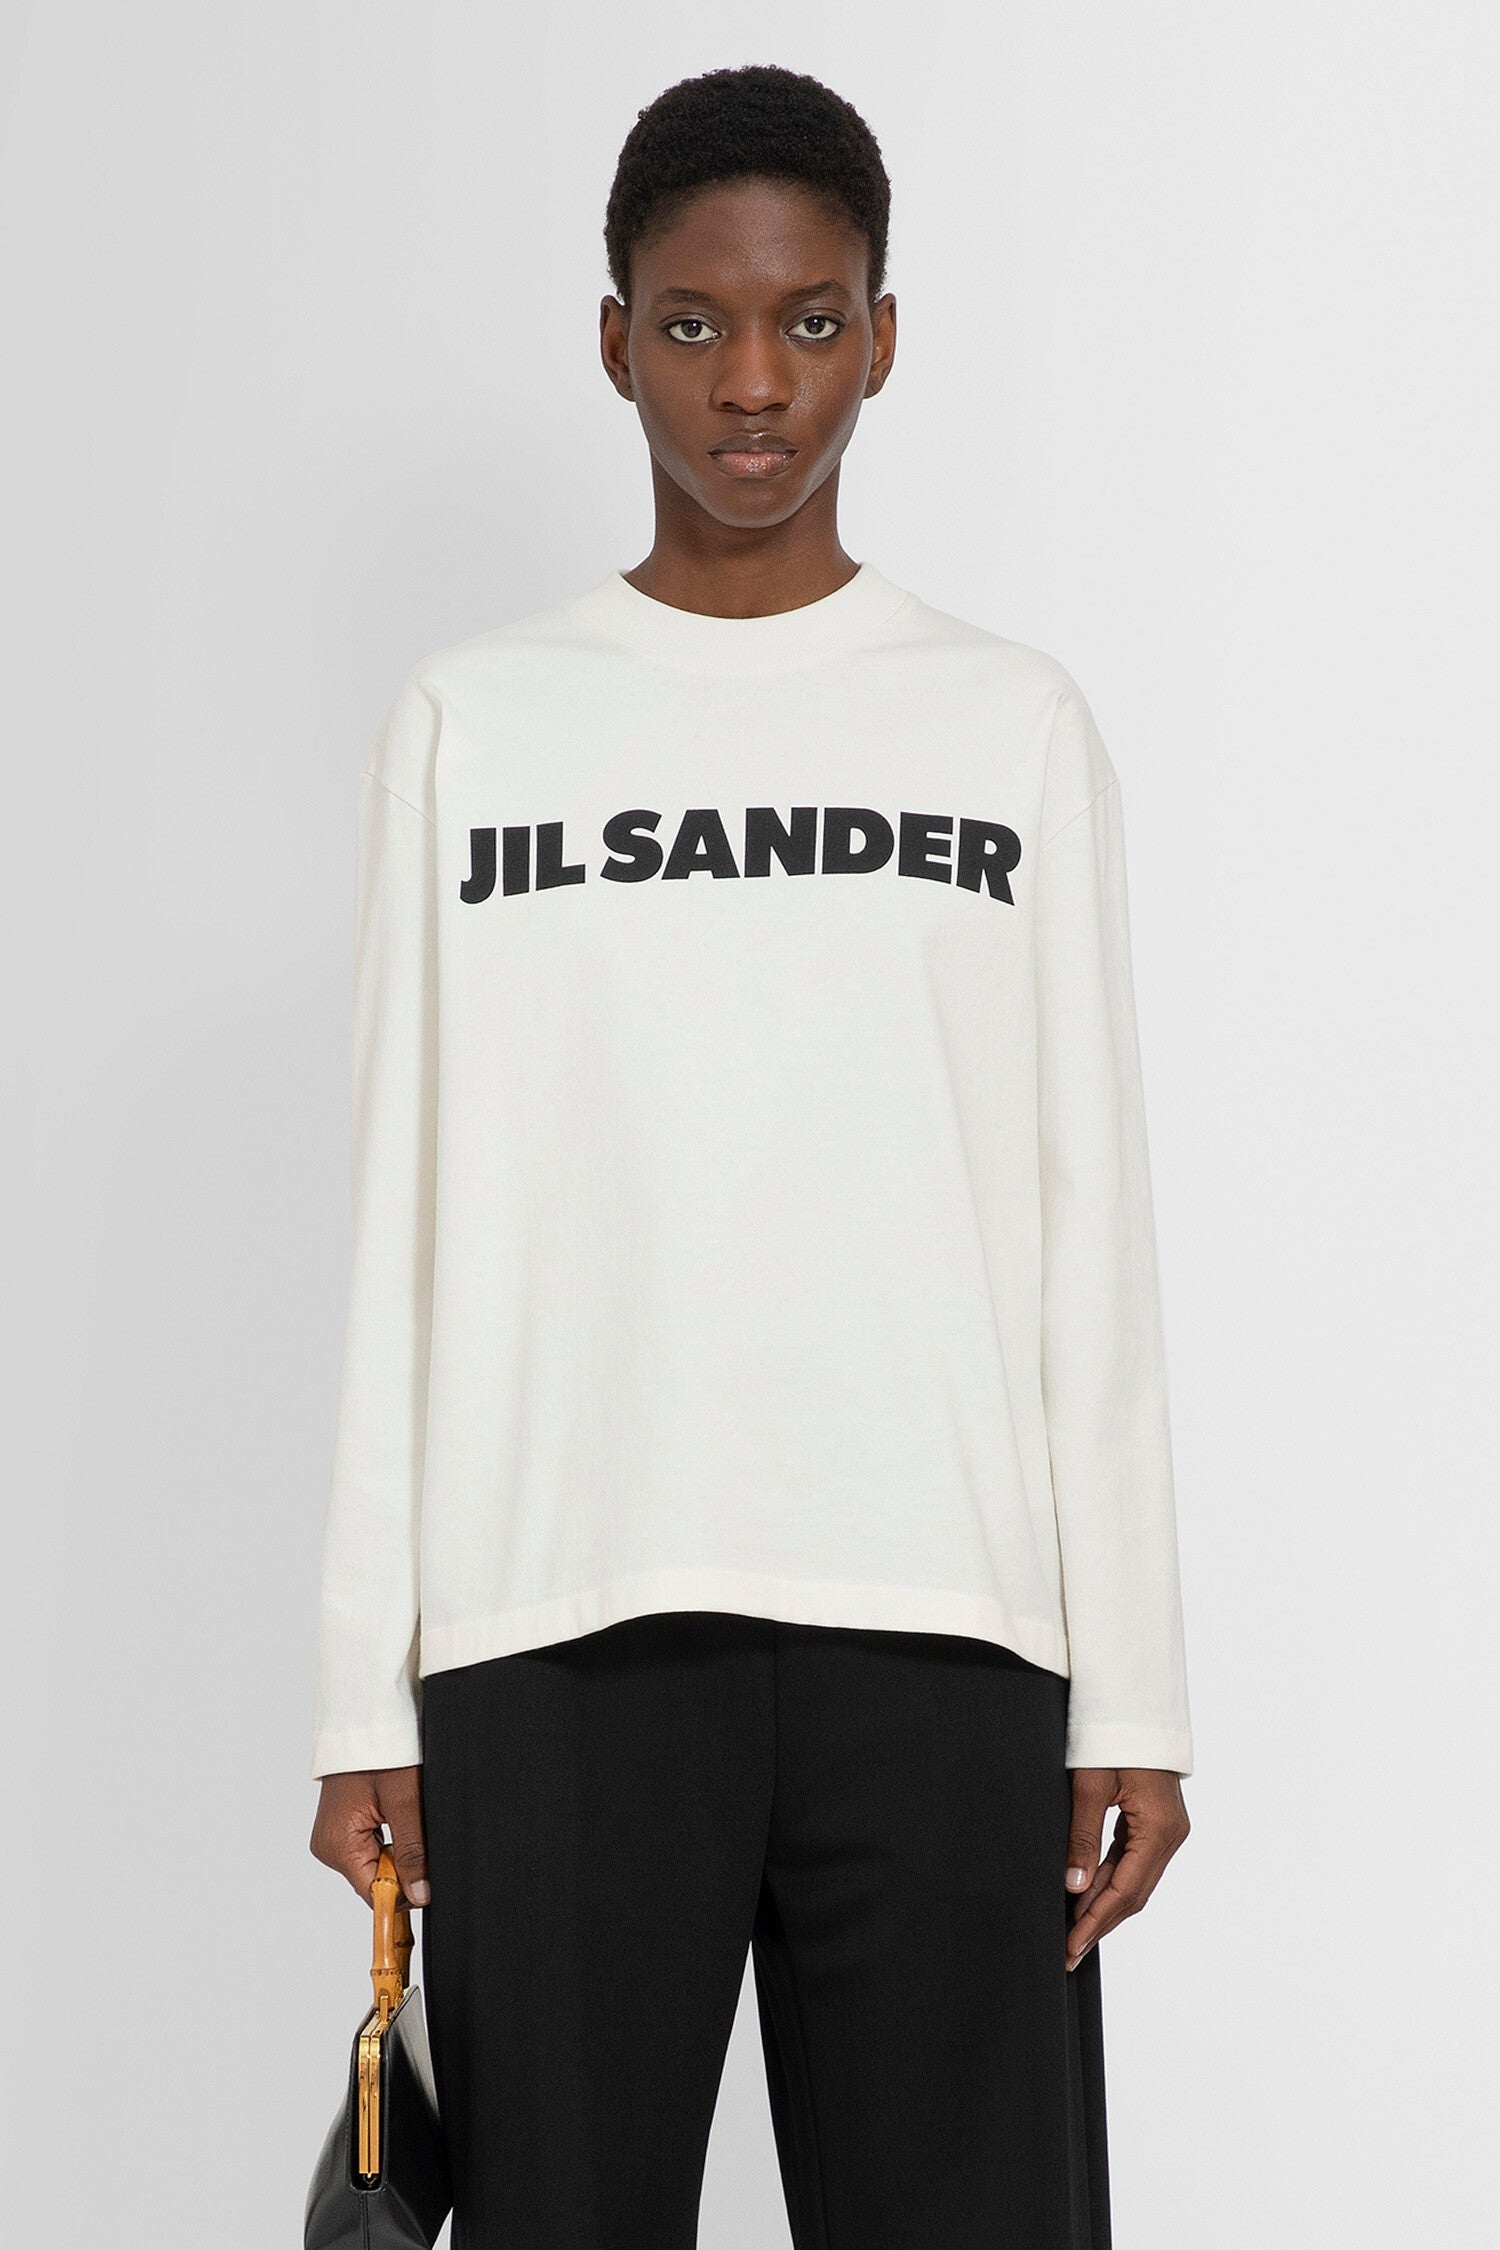 JIL SANDER WOMAN WHITE T-SHIRTS - 1